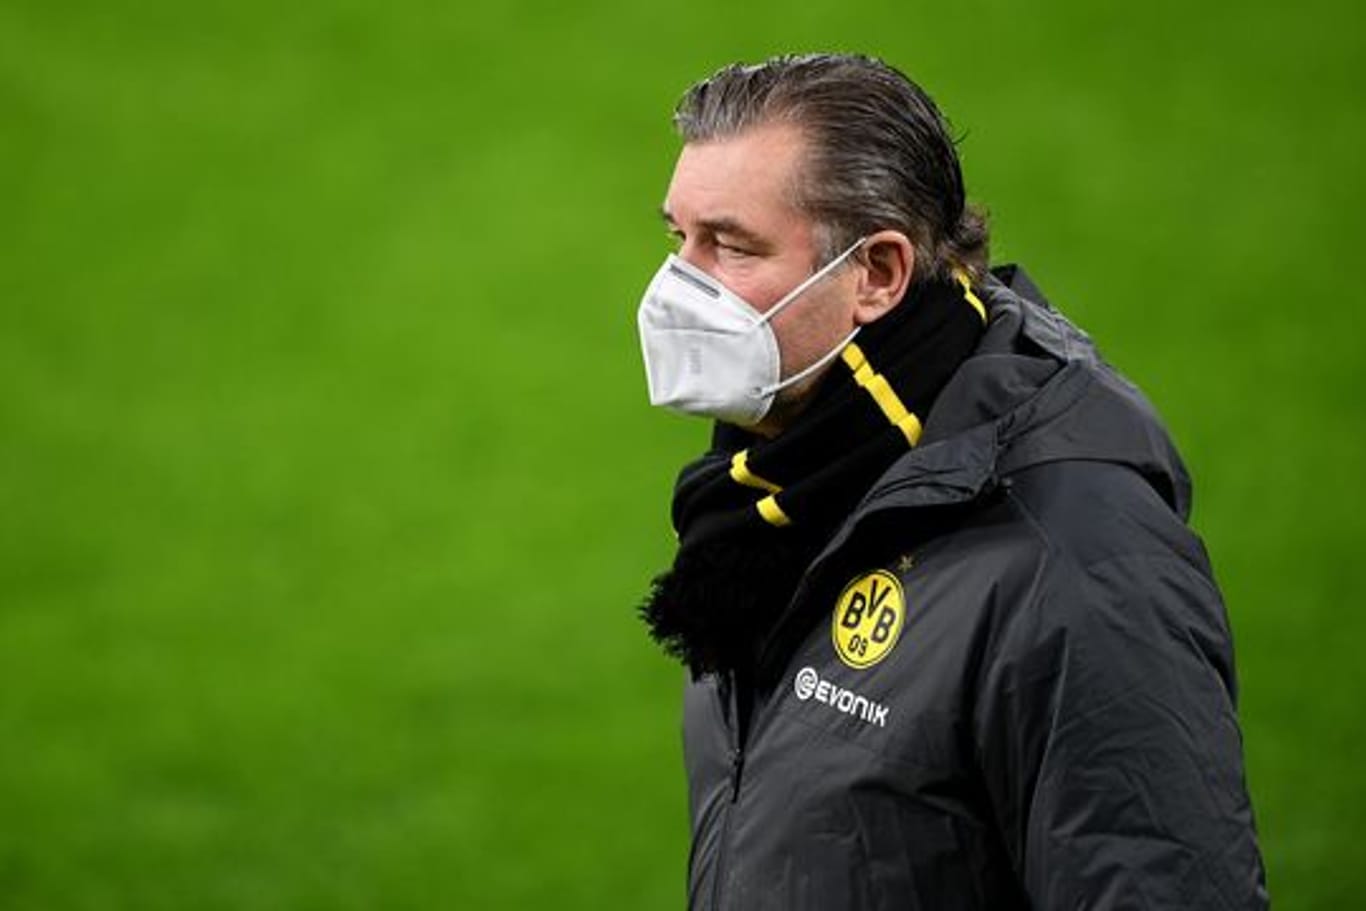 Ist gegen eine bevorzugte Impfung von Fußballern: Michael Zorc, Sportdirektor von Borussia Dortmund.